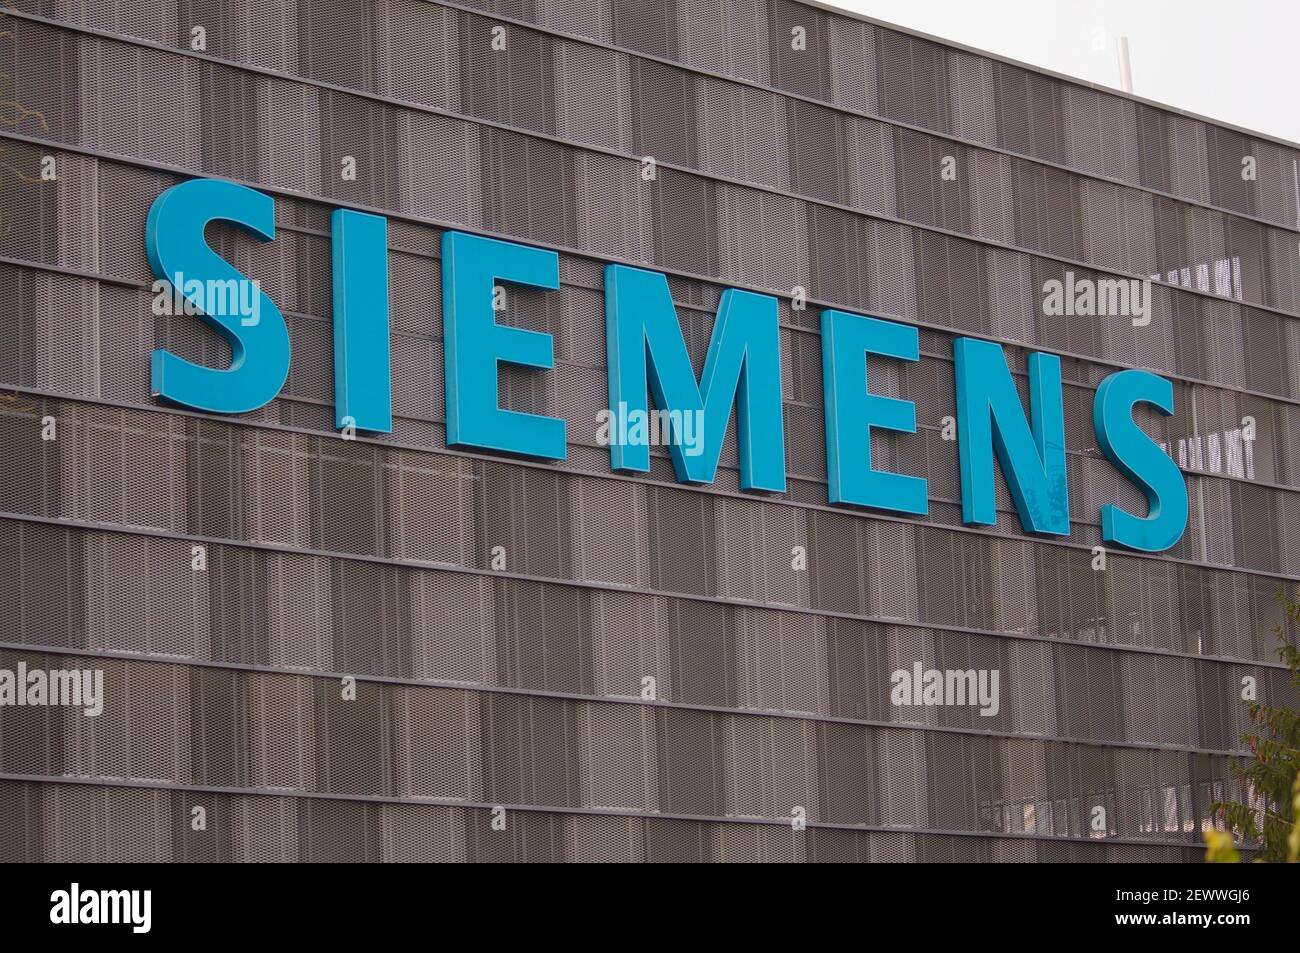 Zug, Suisse - 26 février 2021 : signe de la société Siemens accroché à la façade d'un bâtiment à Zug, Suisse. Siemens AG est un international et un o Banque D'Images